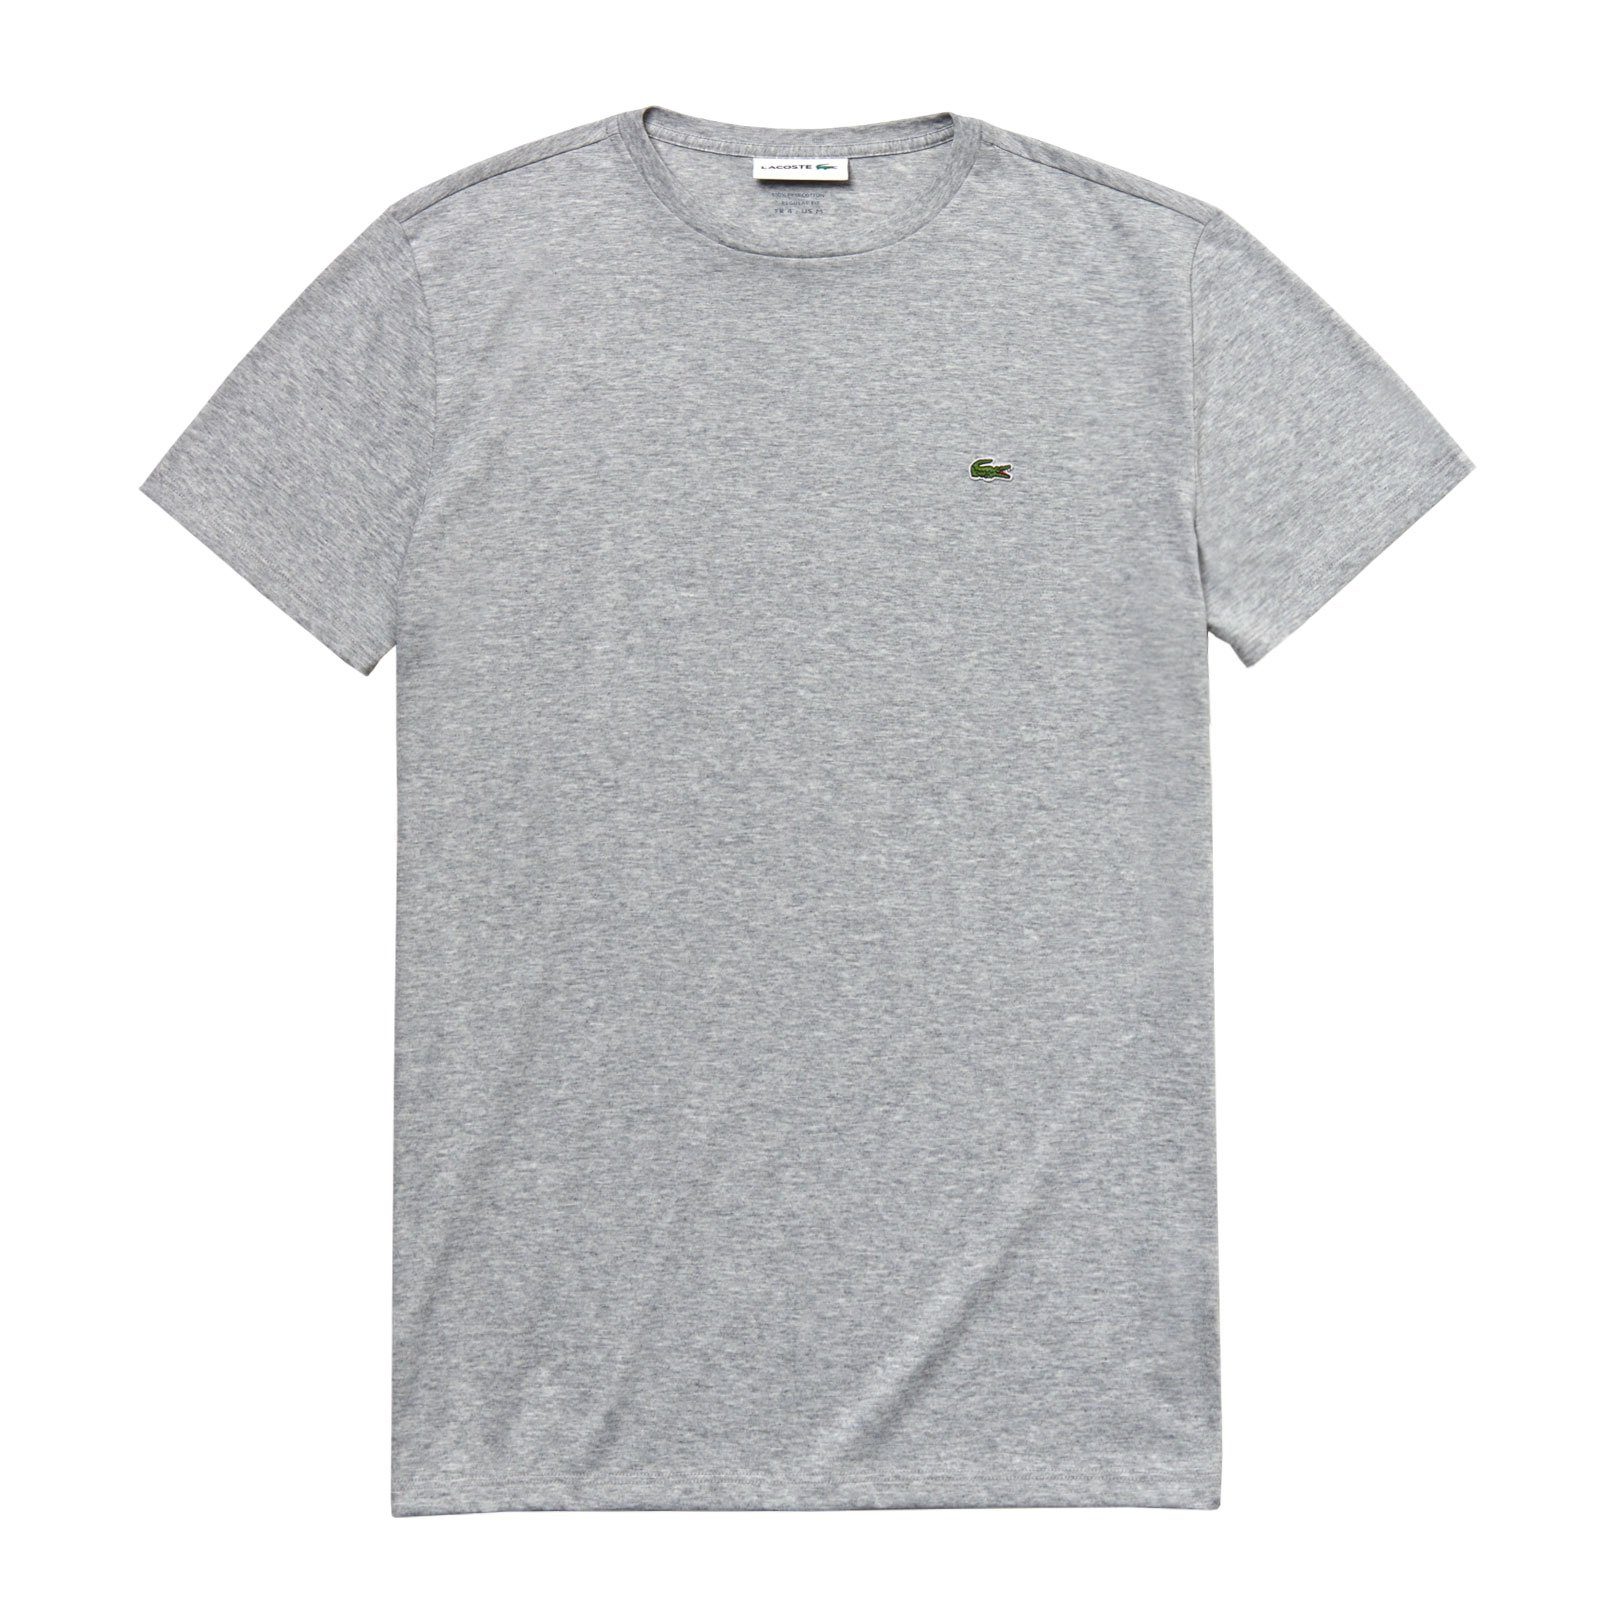 Lacoste T-Shirt Crew Neck kleinem auf grey Brust CCA melange Cotton der Krokodil mit